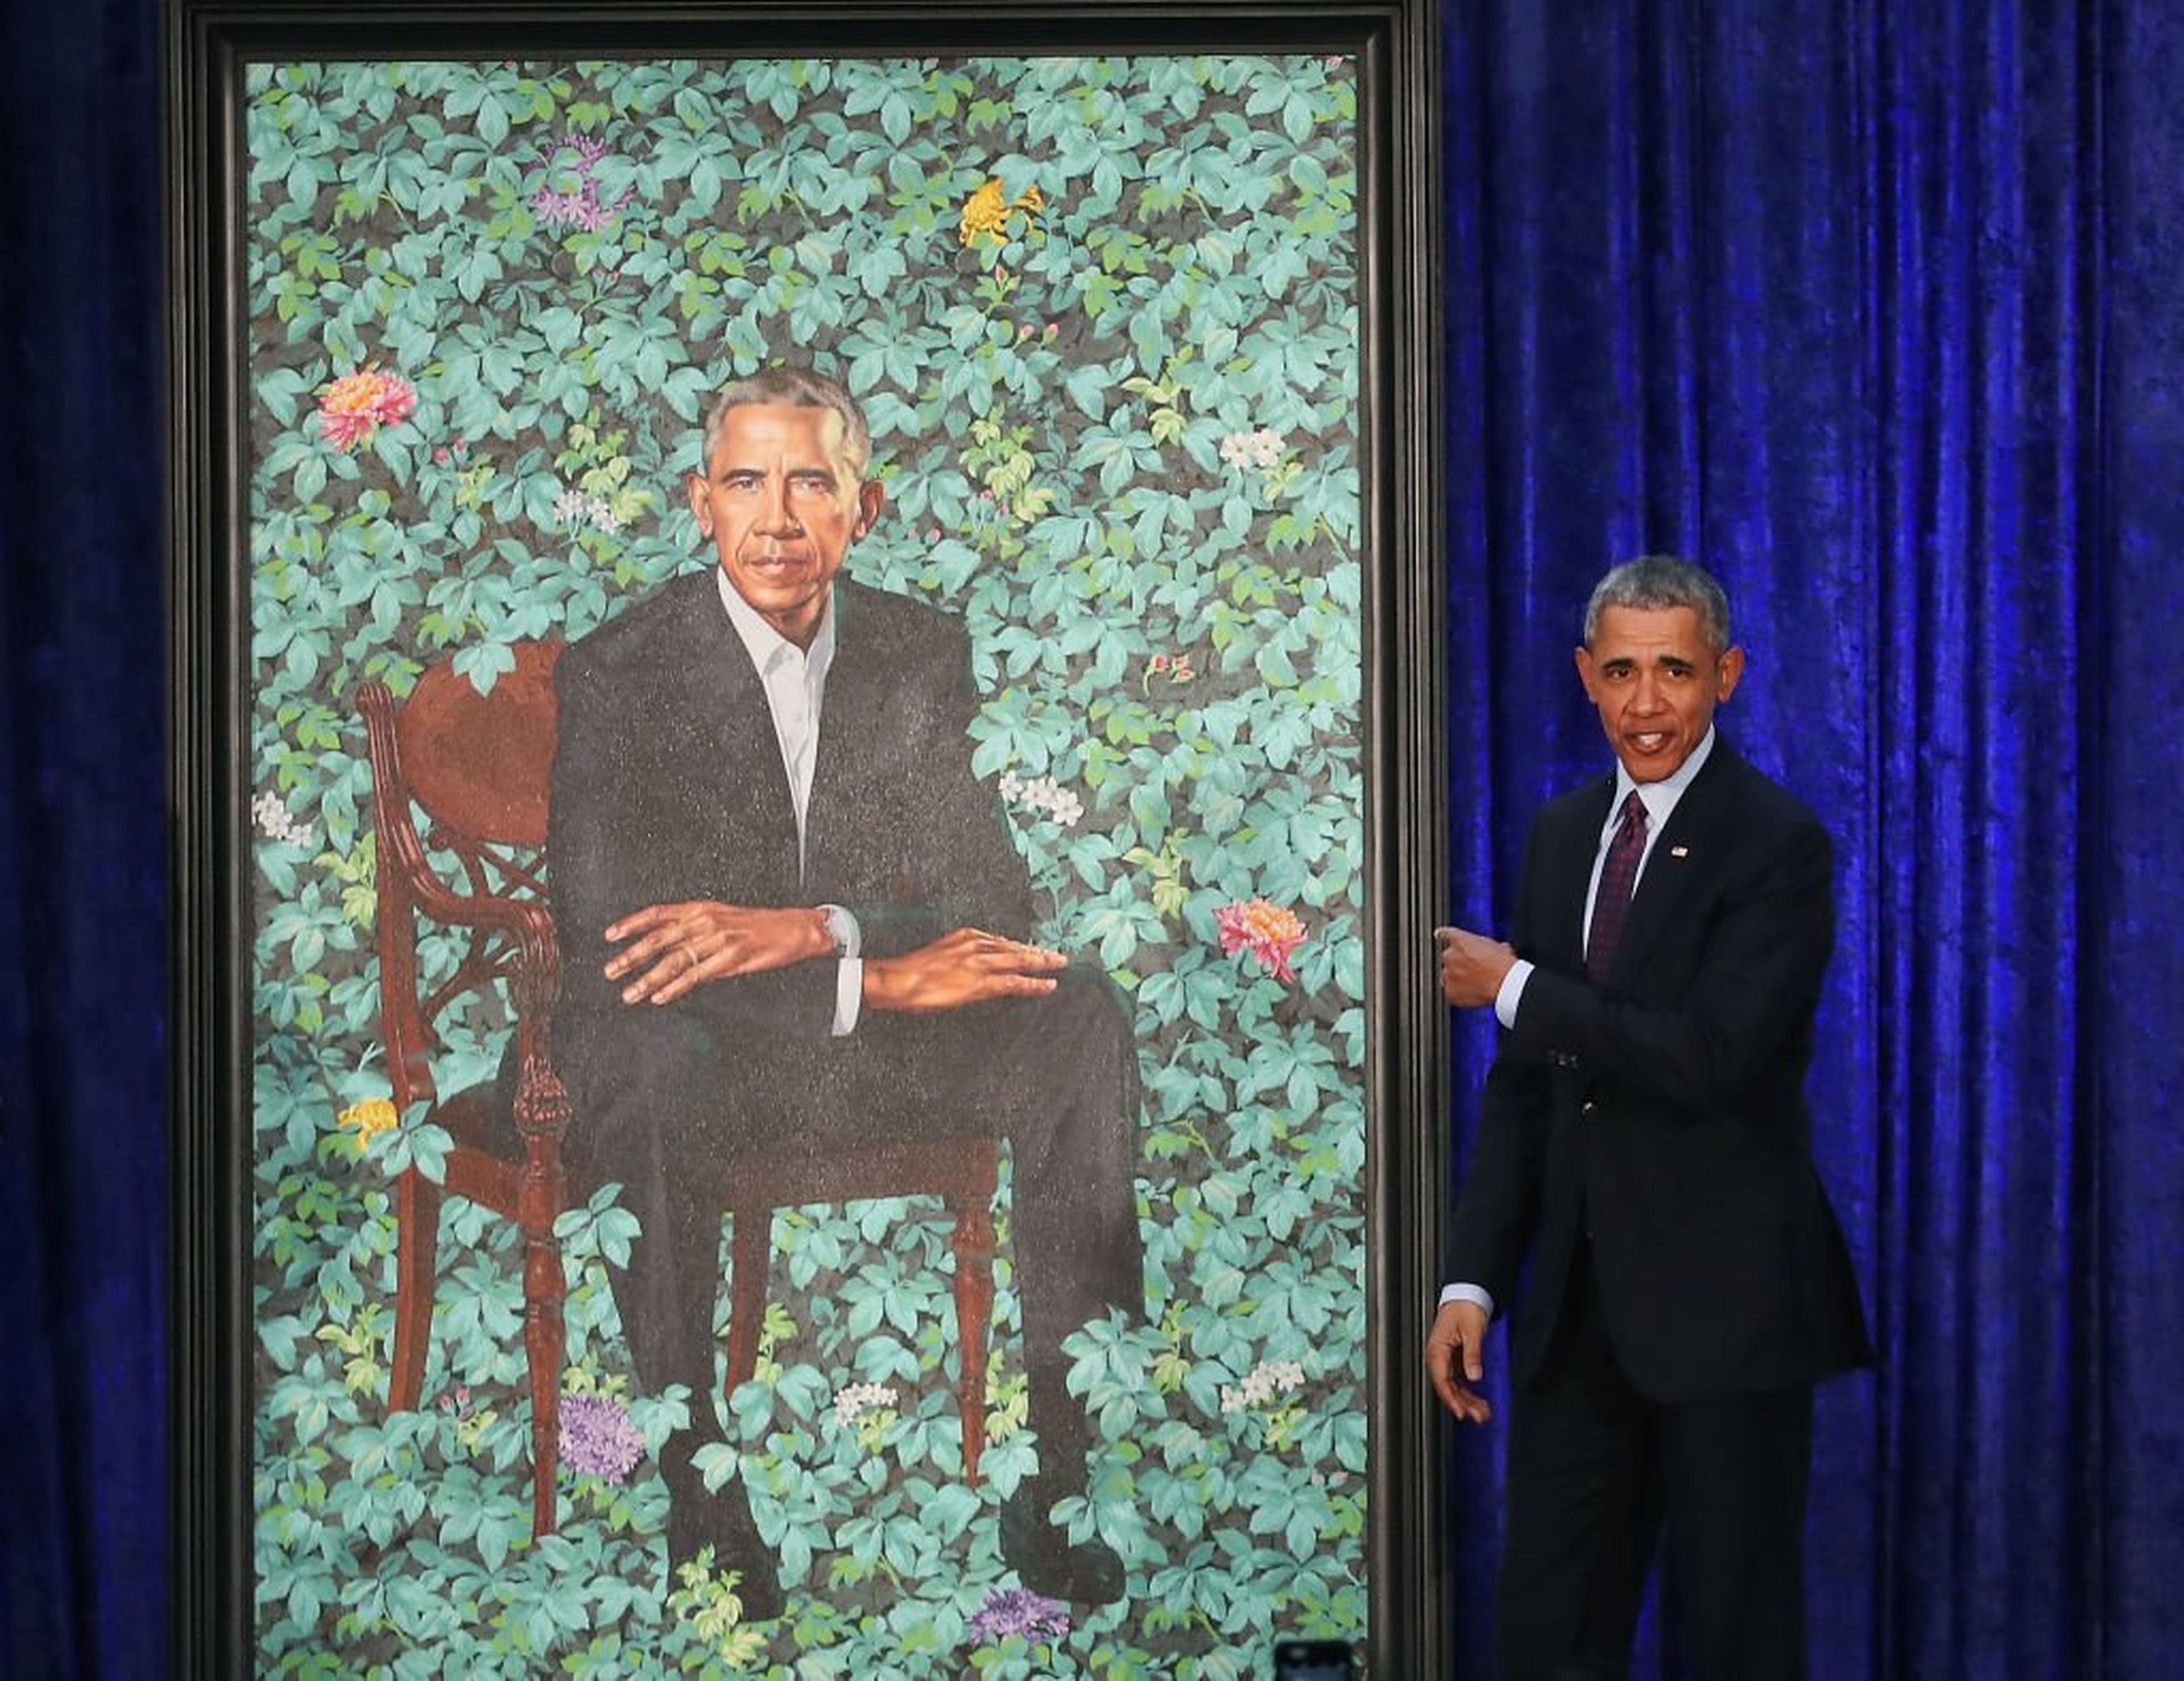 La presentación del retrato de Obama realizado por el artista Kehinde Wiley.